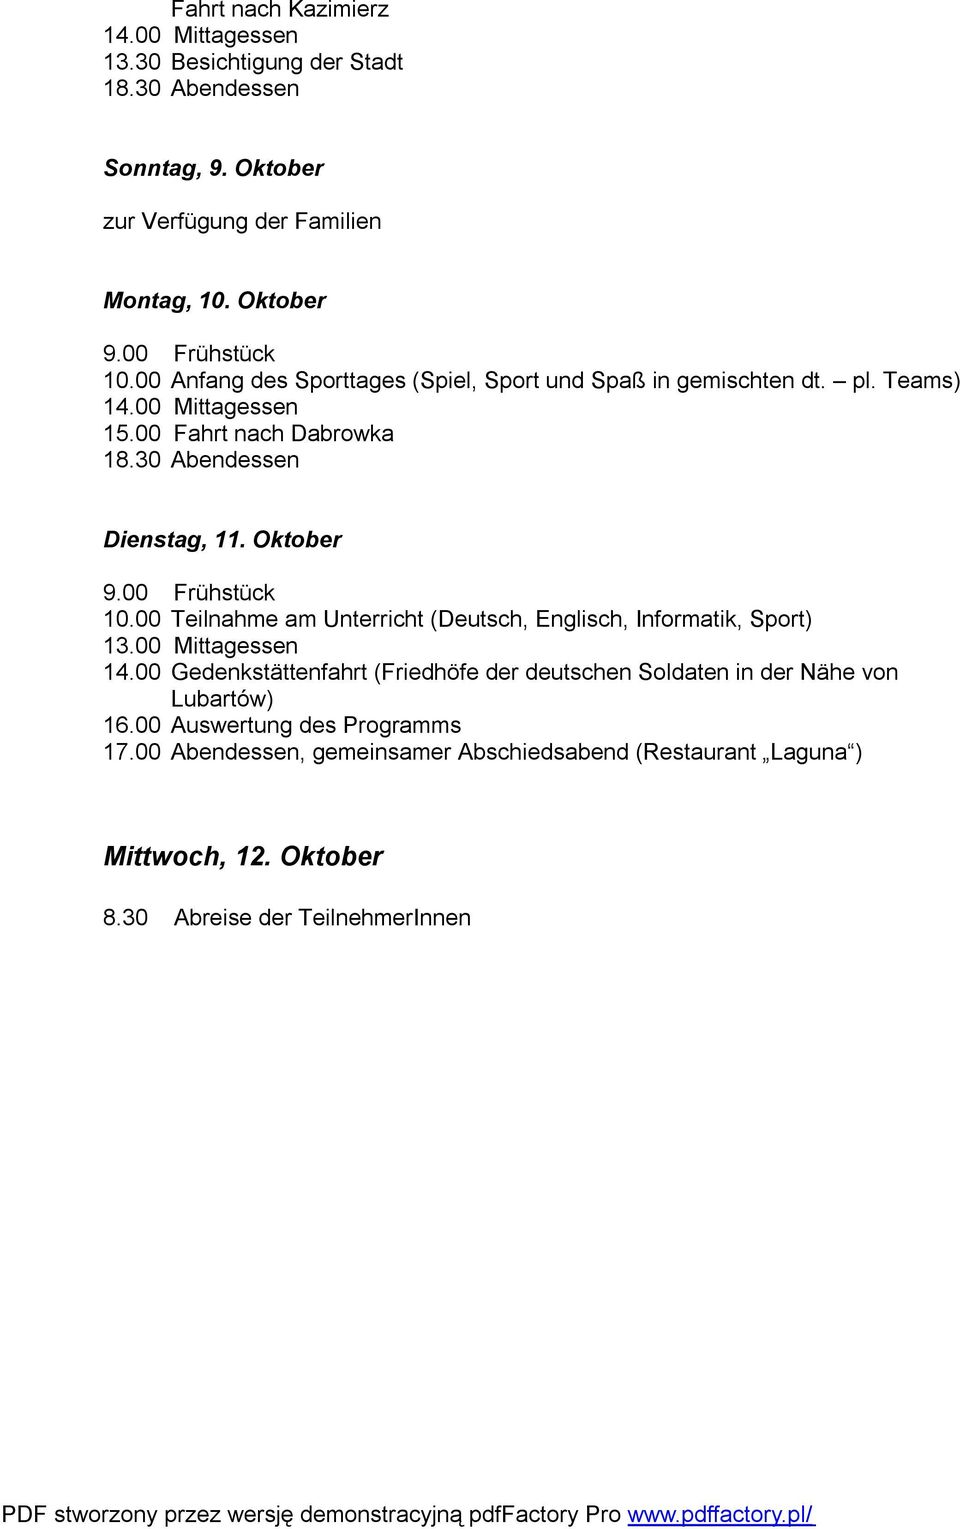 Oktober 10.00 Teilnahme am Unterricht (Deutsch, Englisch, Informatik, Sport) 13.00 Mittagessen 14.